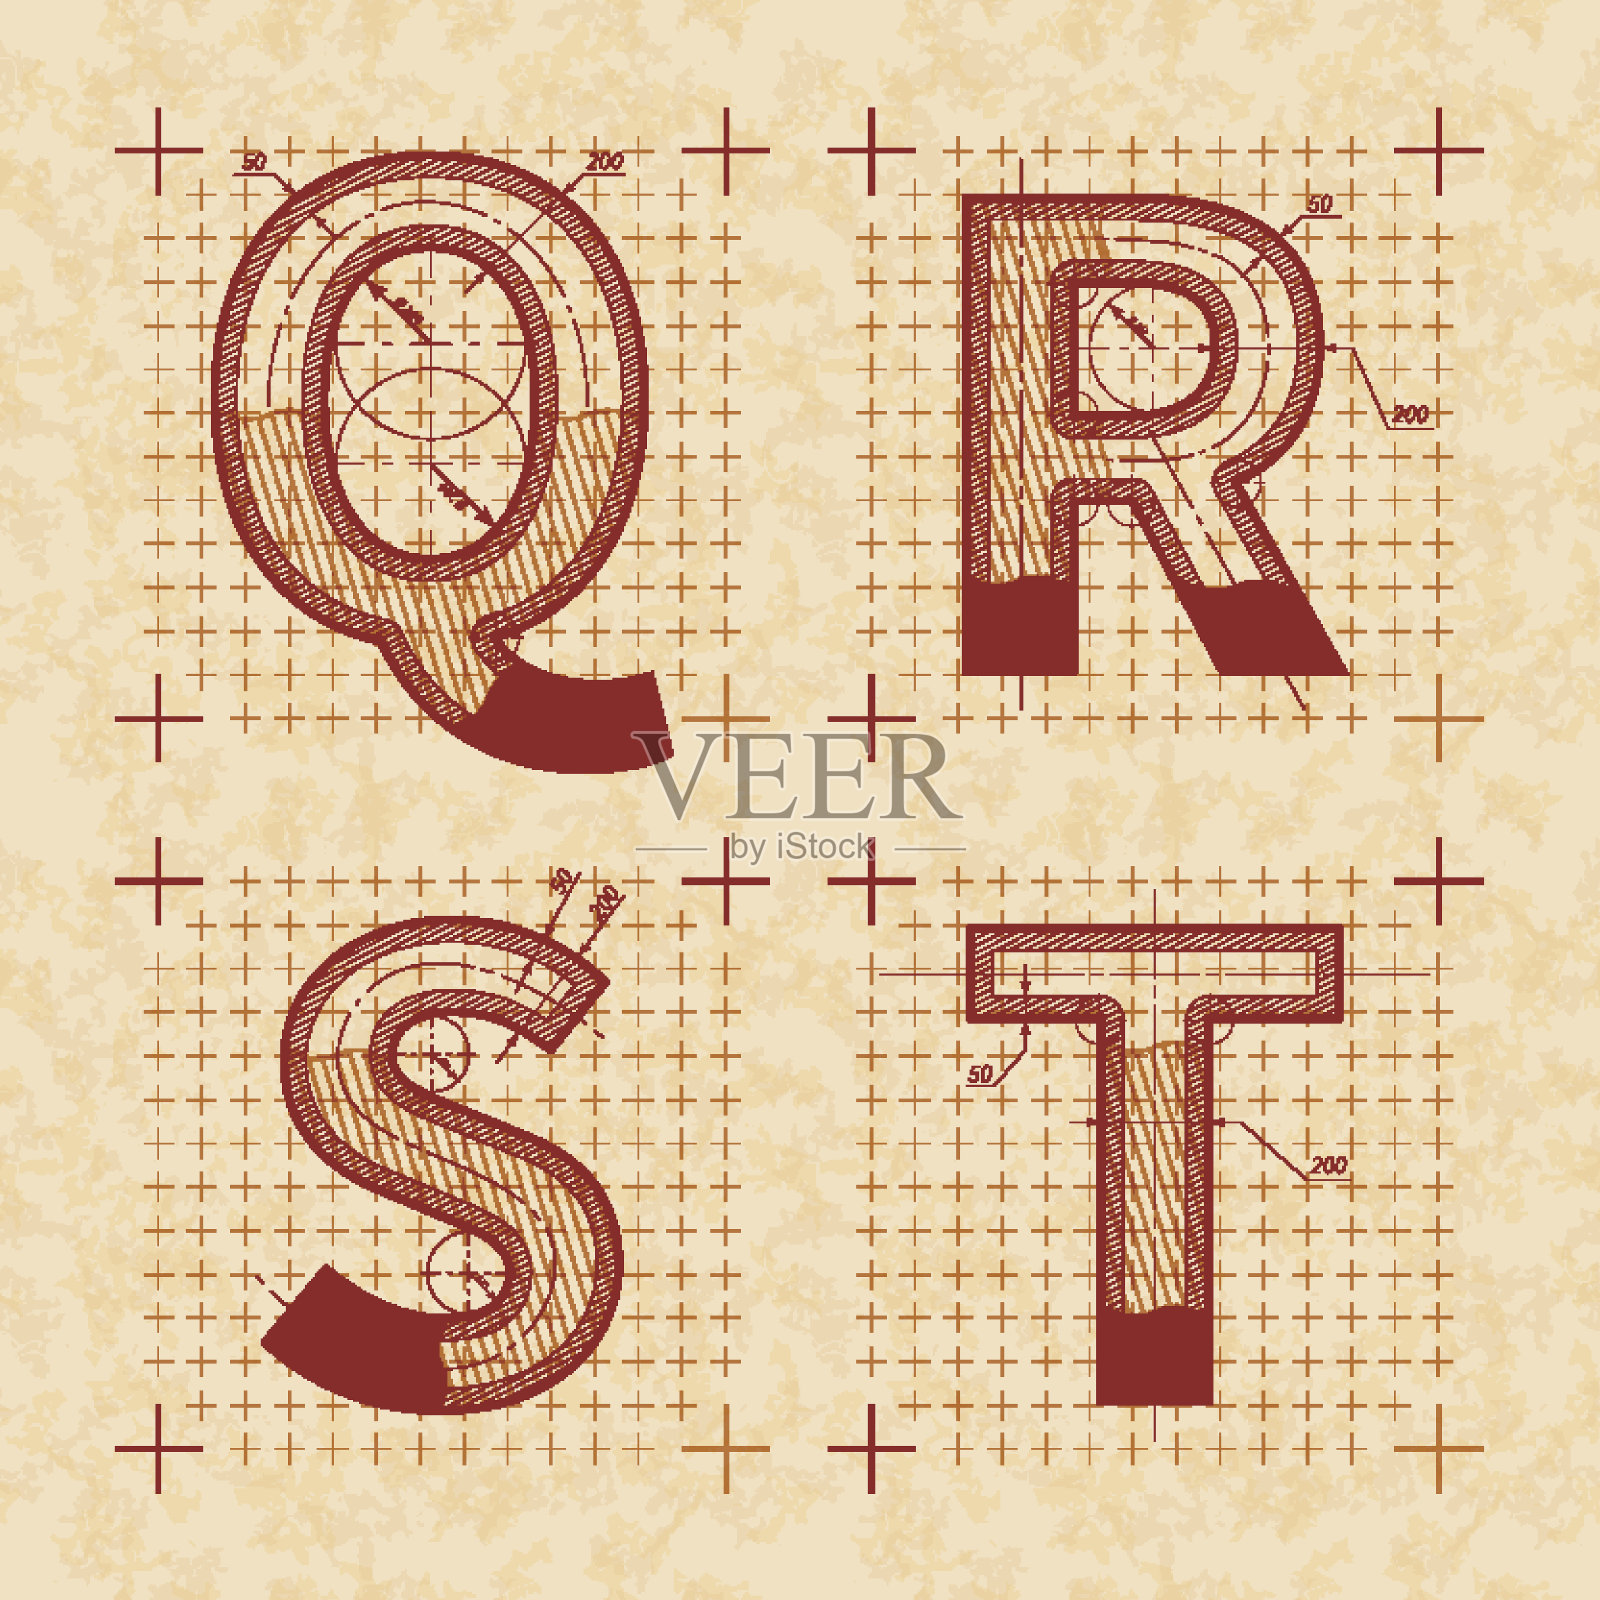 中世纪发明家的Q R S T字母草图。复古风格的字体在旧的纹理纸设计元素图片